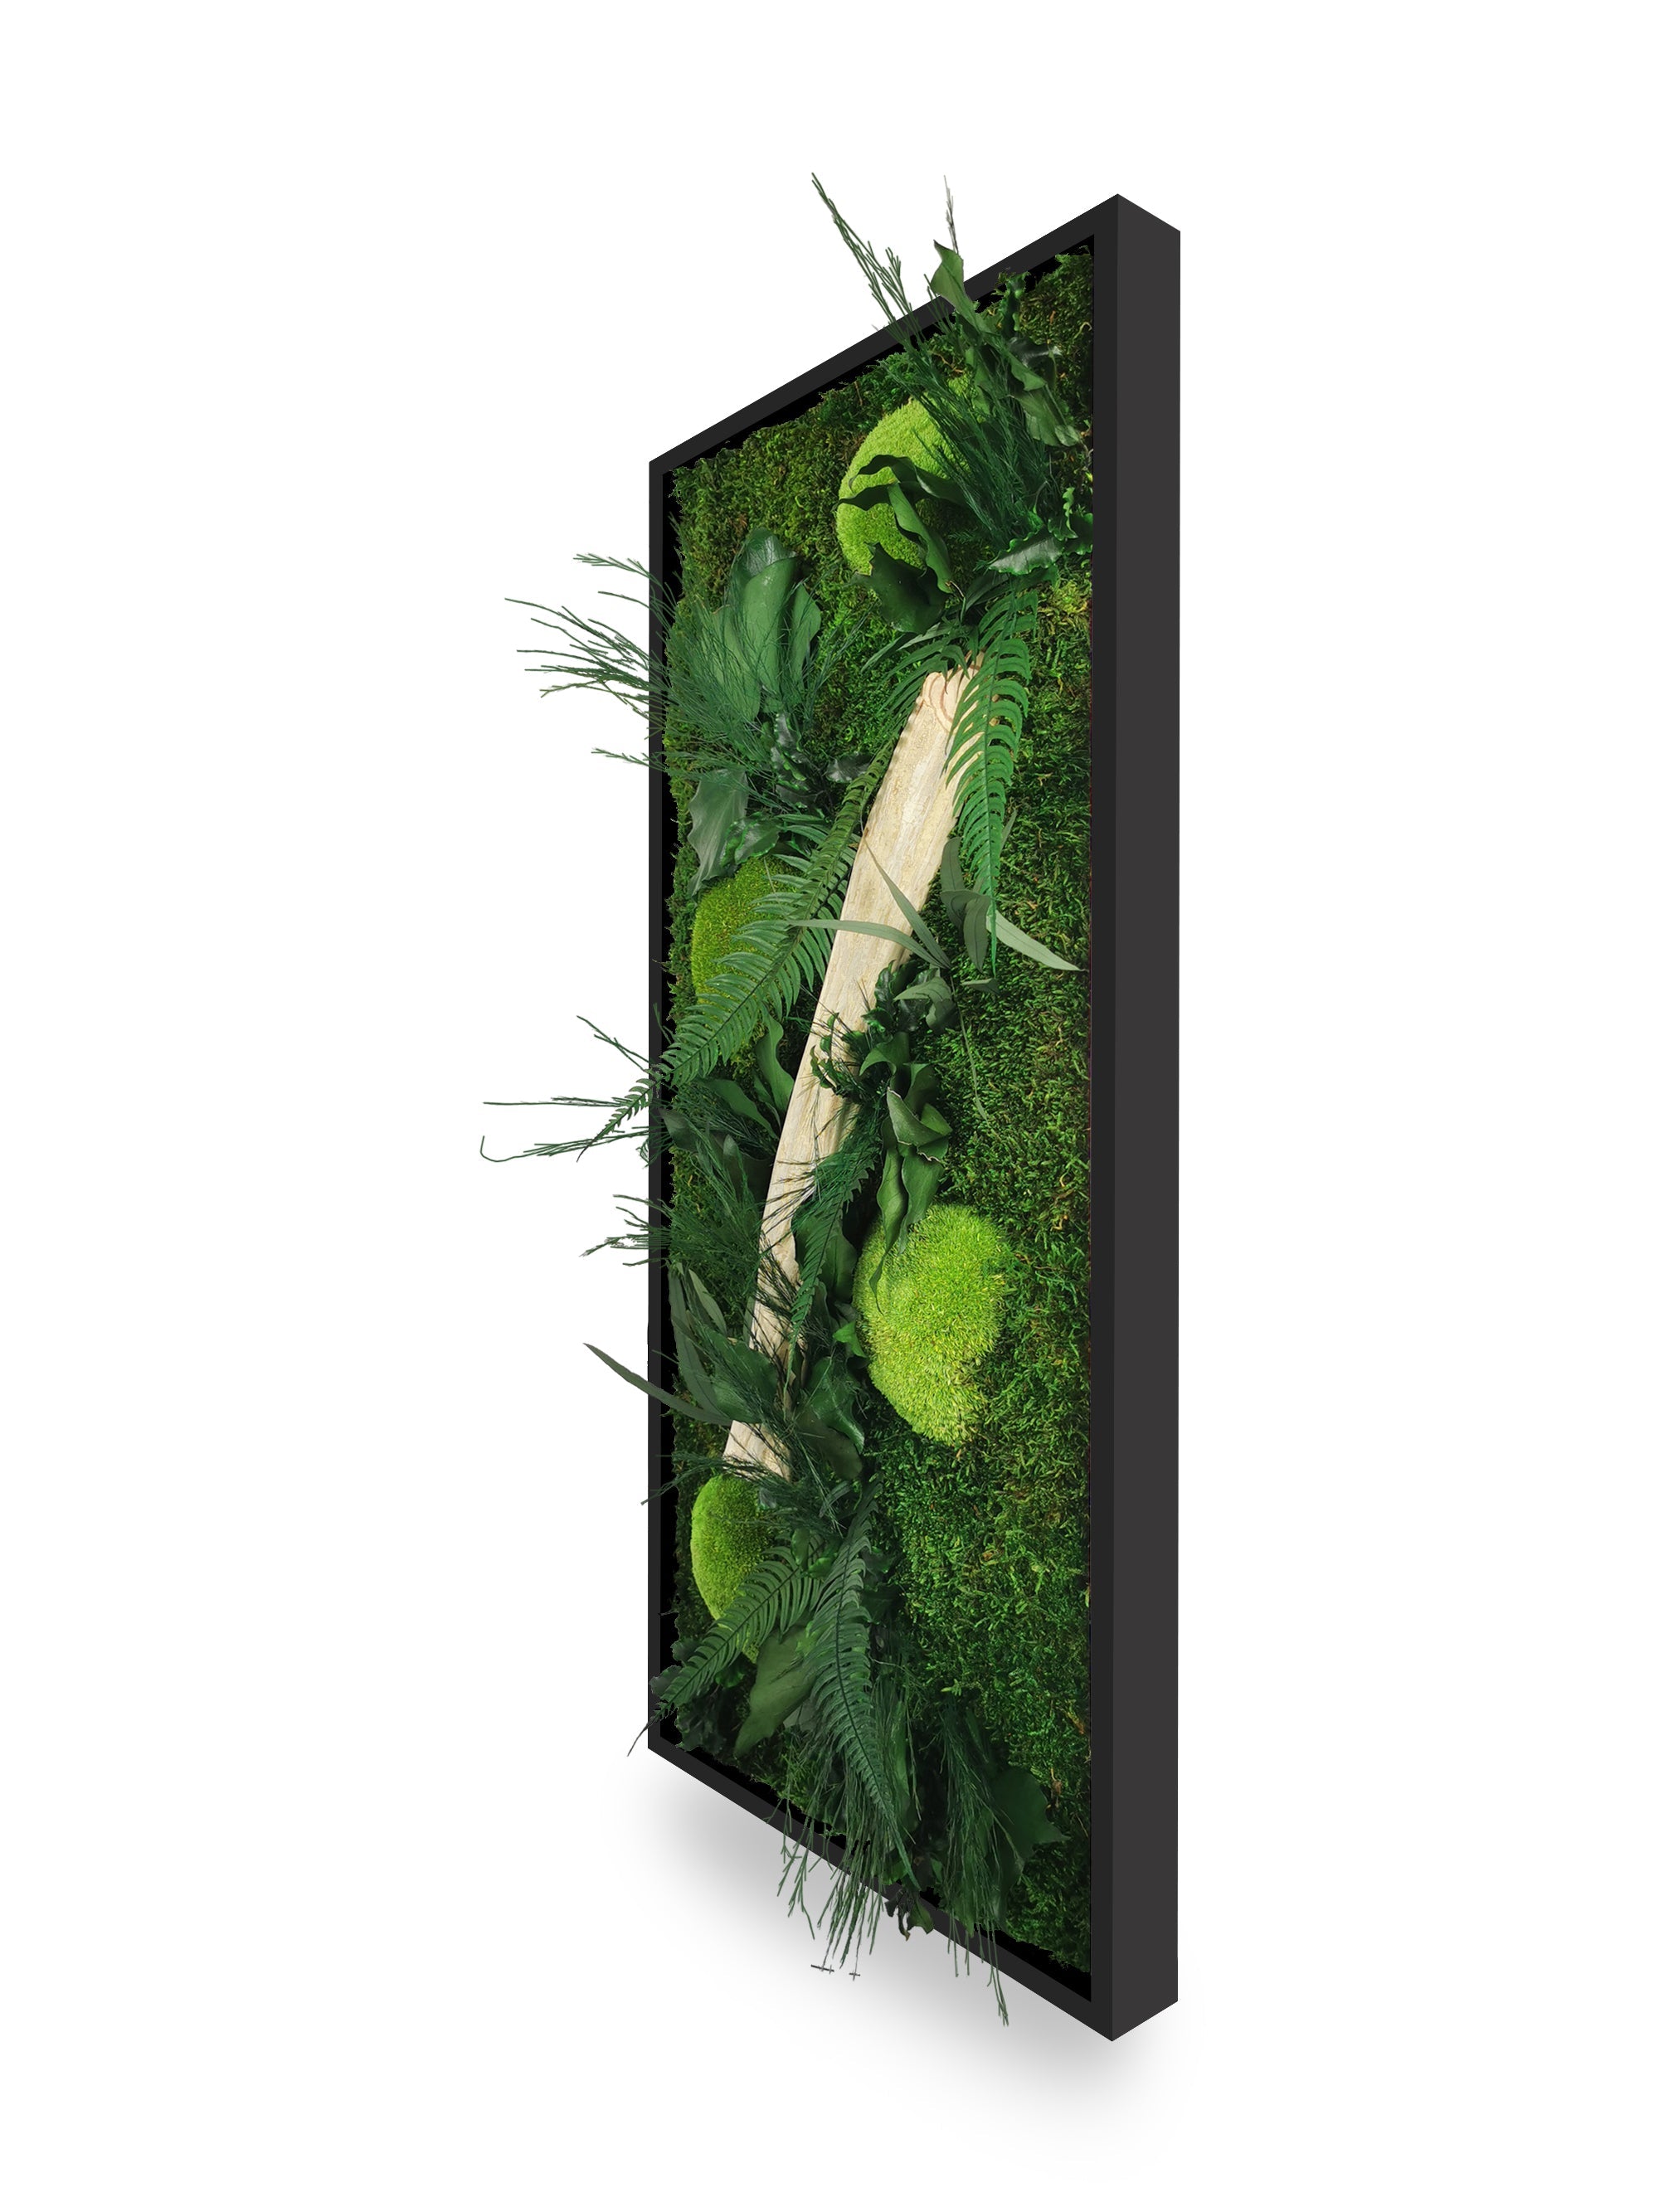 Stabilisierter Pflanzentisch aus Naturholz, 34 x 74 cm